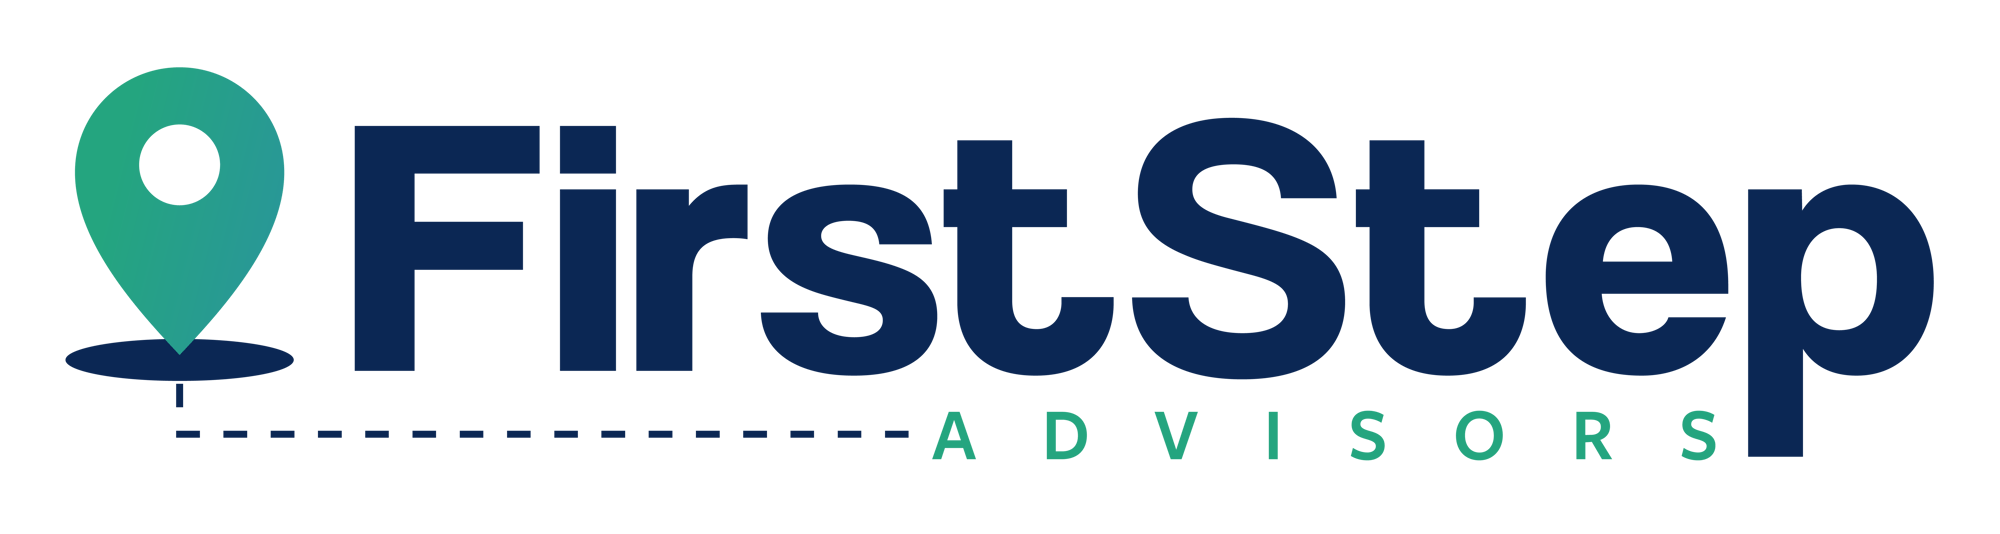 1_FIRST STEP ADVISORS_v4-01 Primary (Standard)